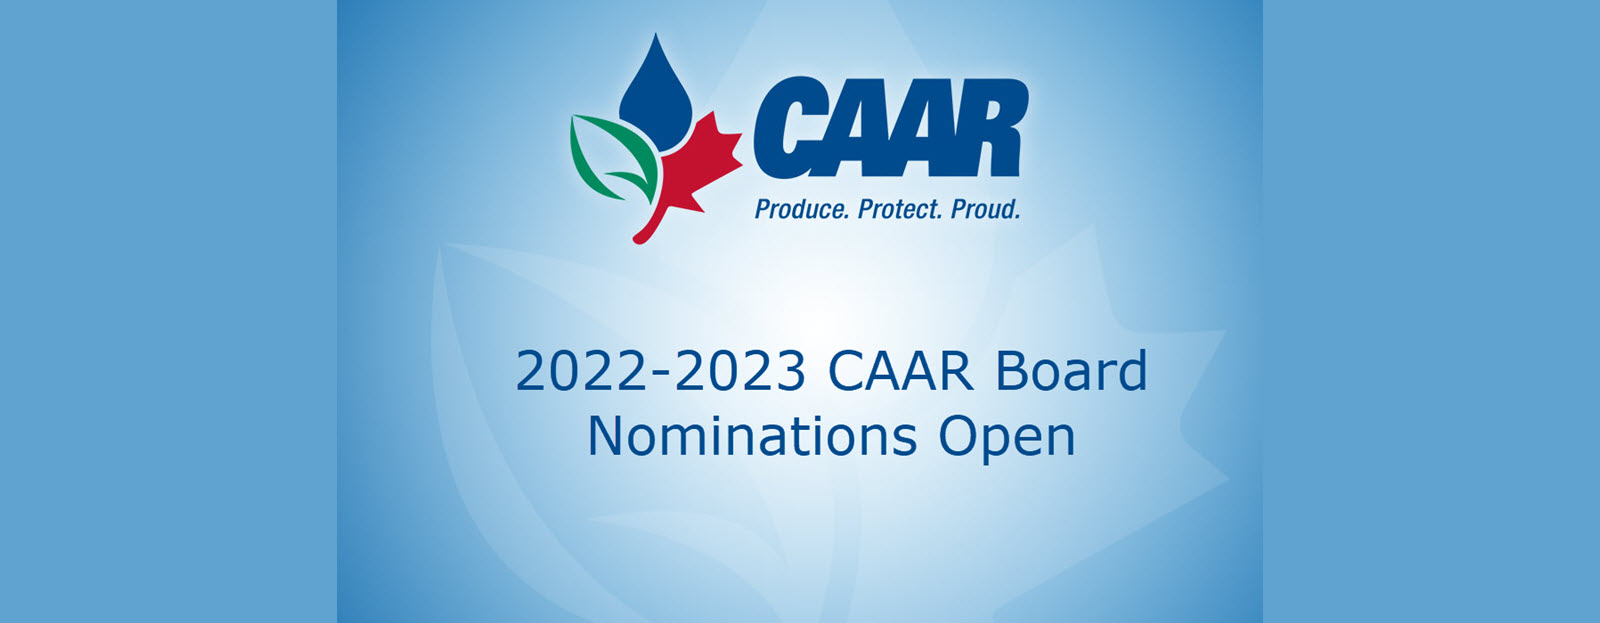 Banner for CAAR 2022-2023 Board of Directors Nominations Now Open